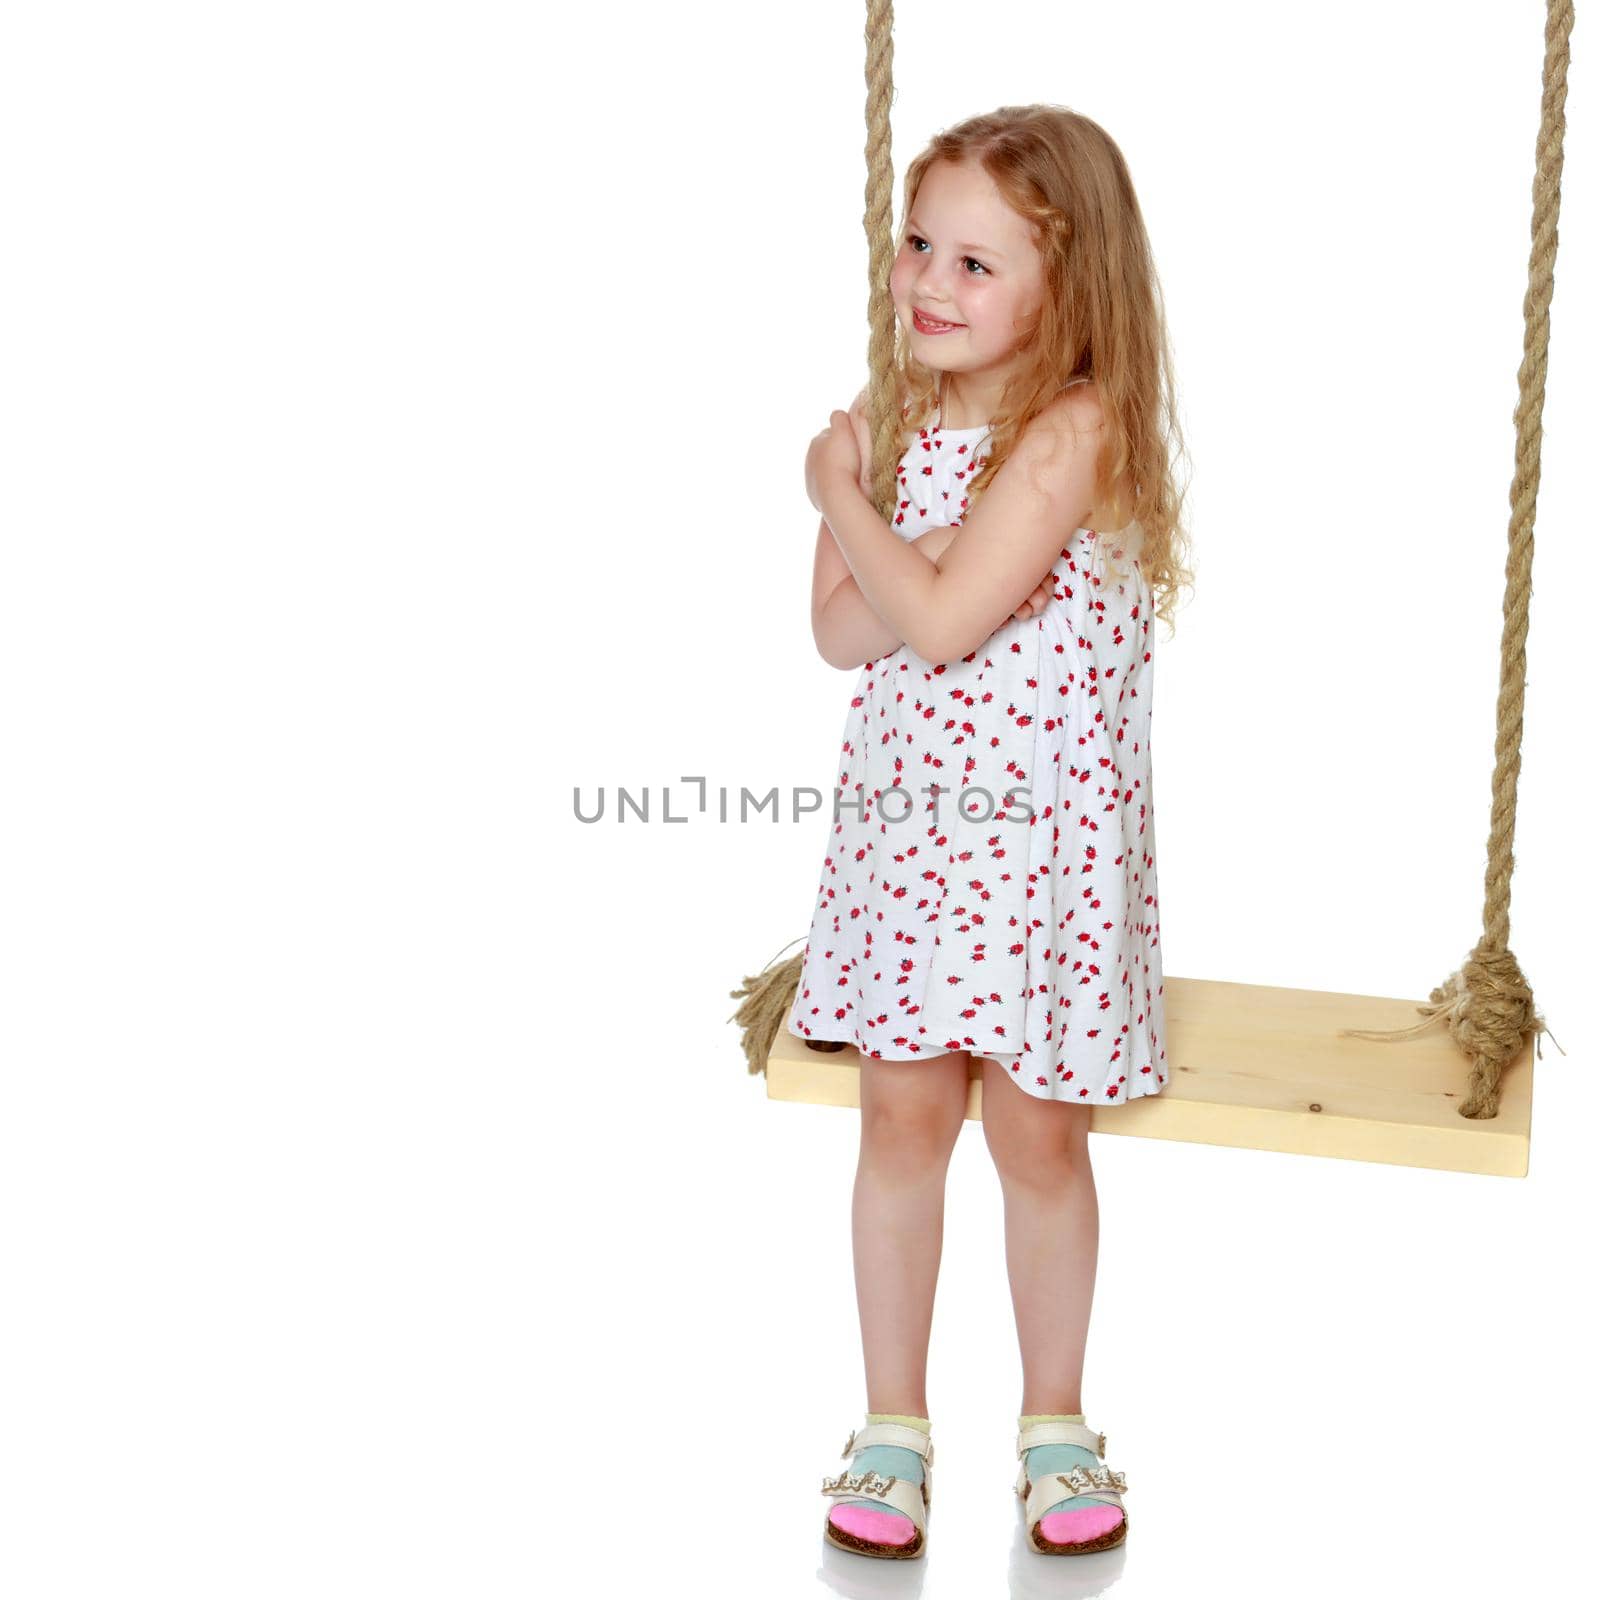 Little girl swinging on a swing by kolesnikov_studio